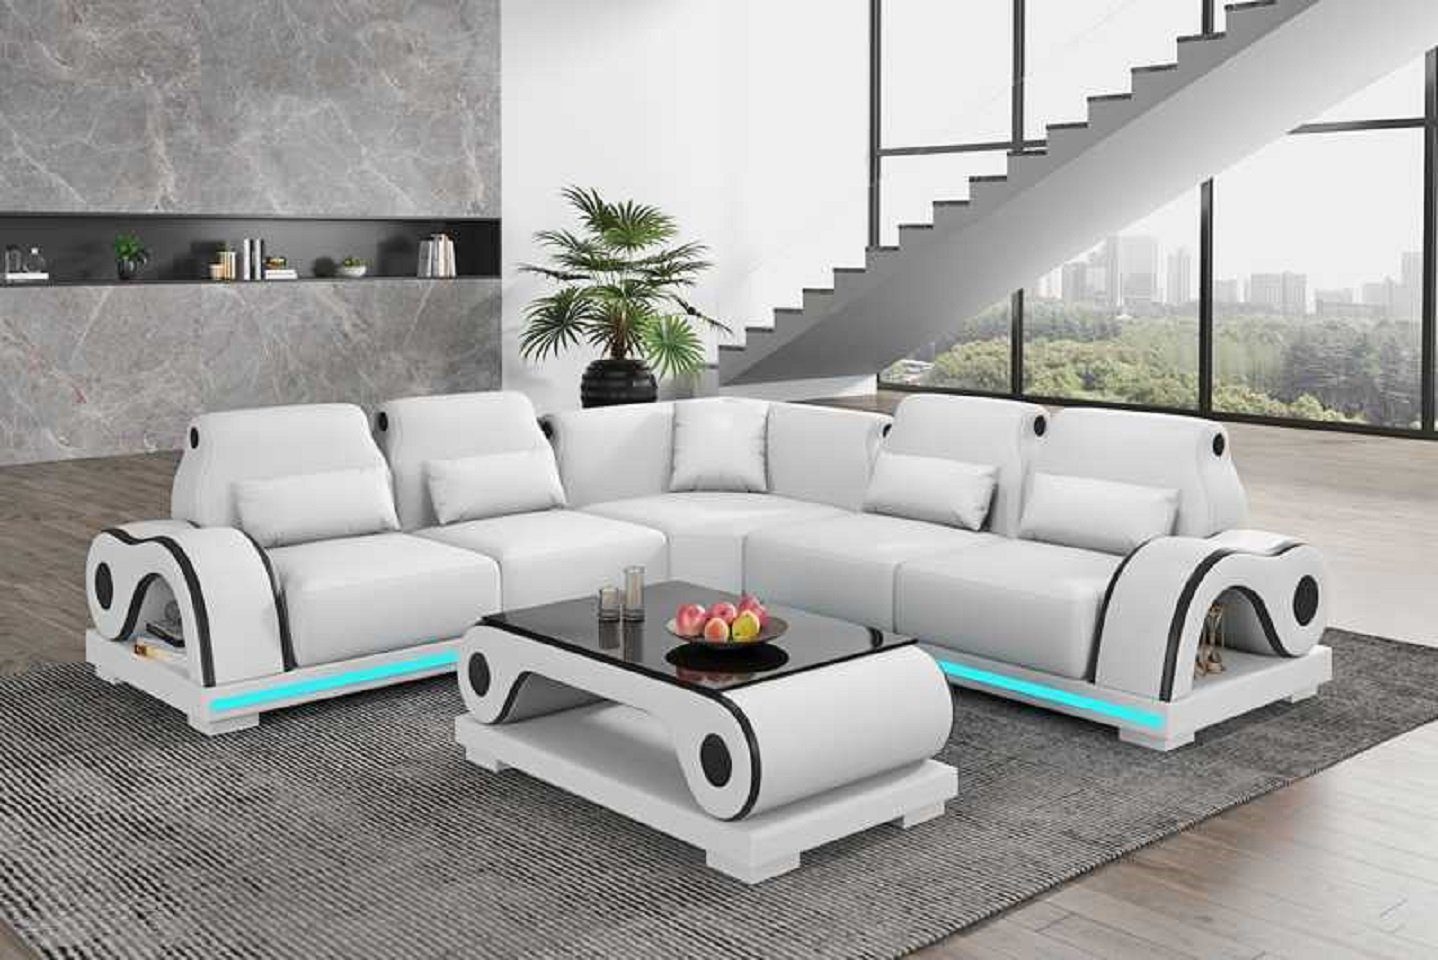 JVmoebel Ecksofa Luxus Ecksofa L Form Couch Sofa Moderne Eckgarnitur Couchen, 3 Teile, Made in Europe Weiß